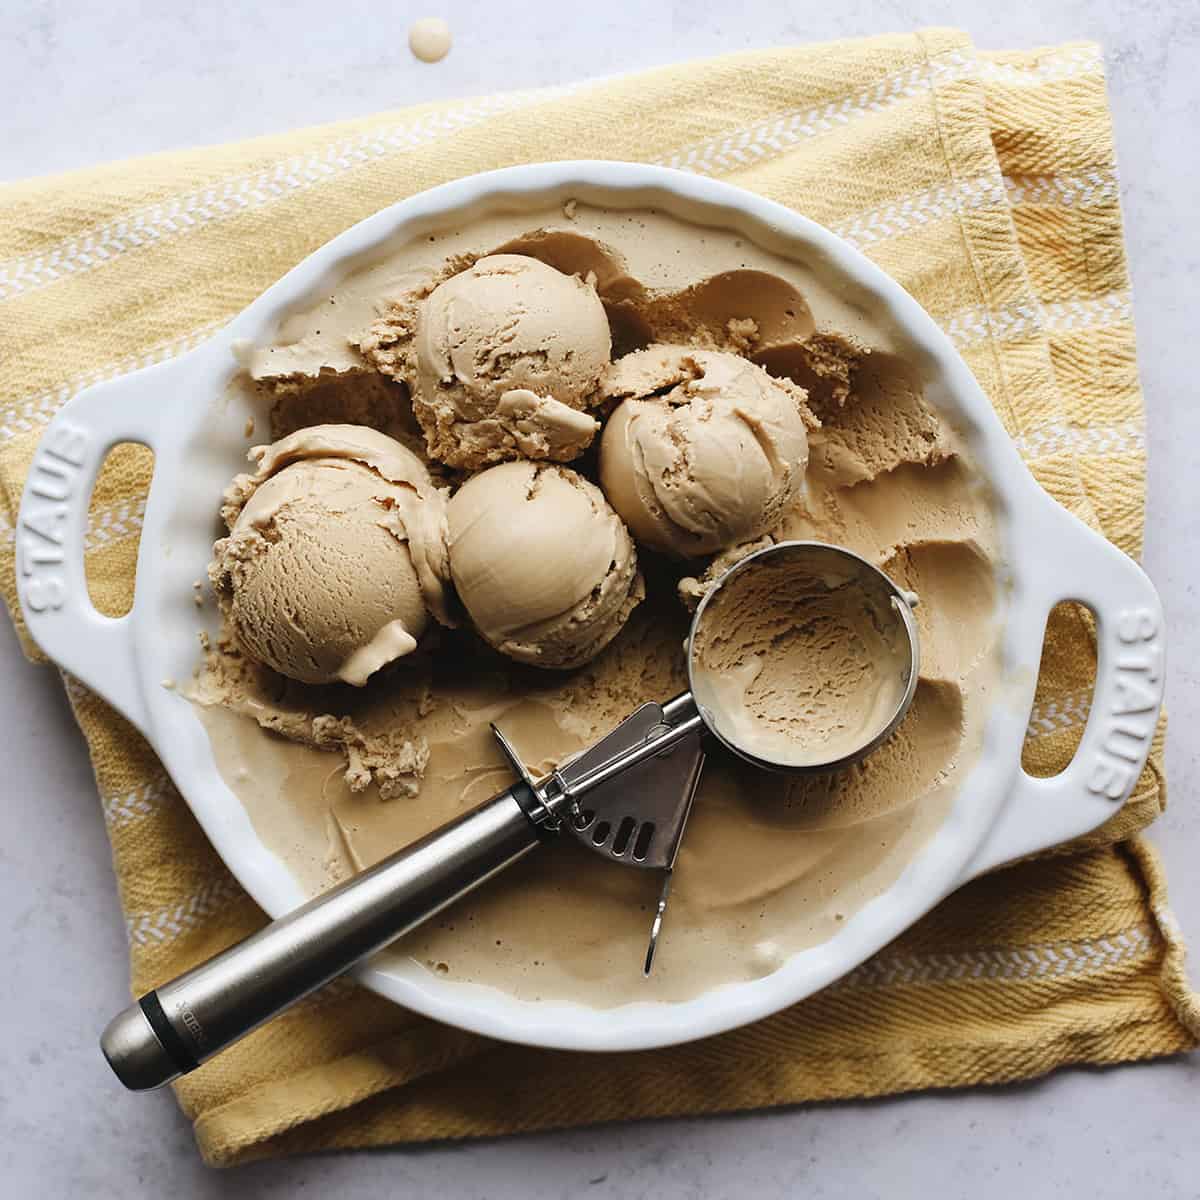 https://joyfoodsunshine.com/wp-content/uploads/2021/08/homemade-coffee-ice-cream-recipe-5.jpg